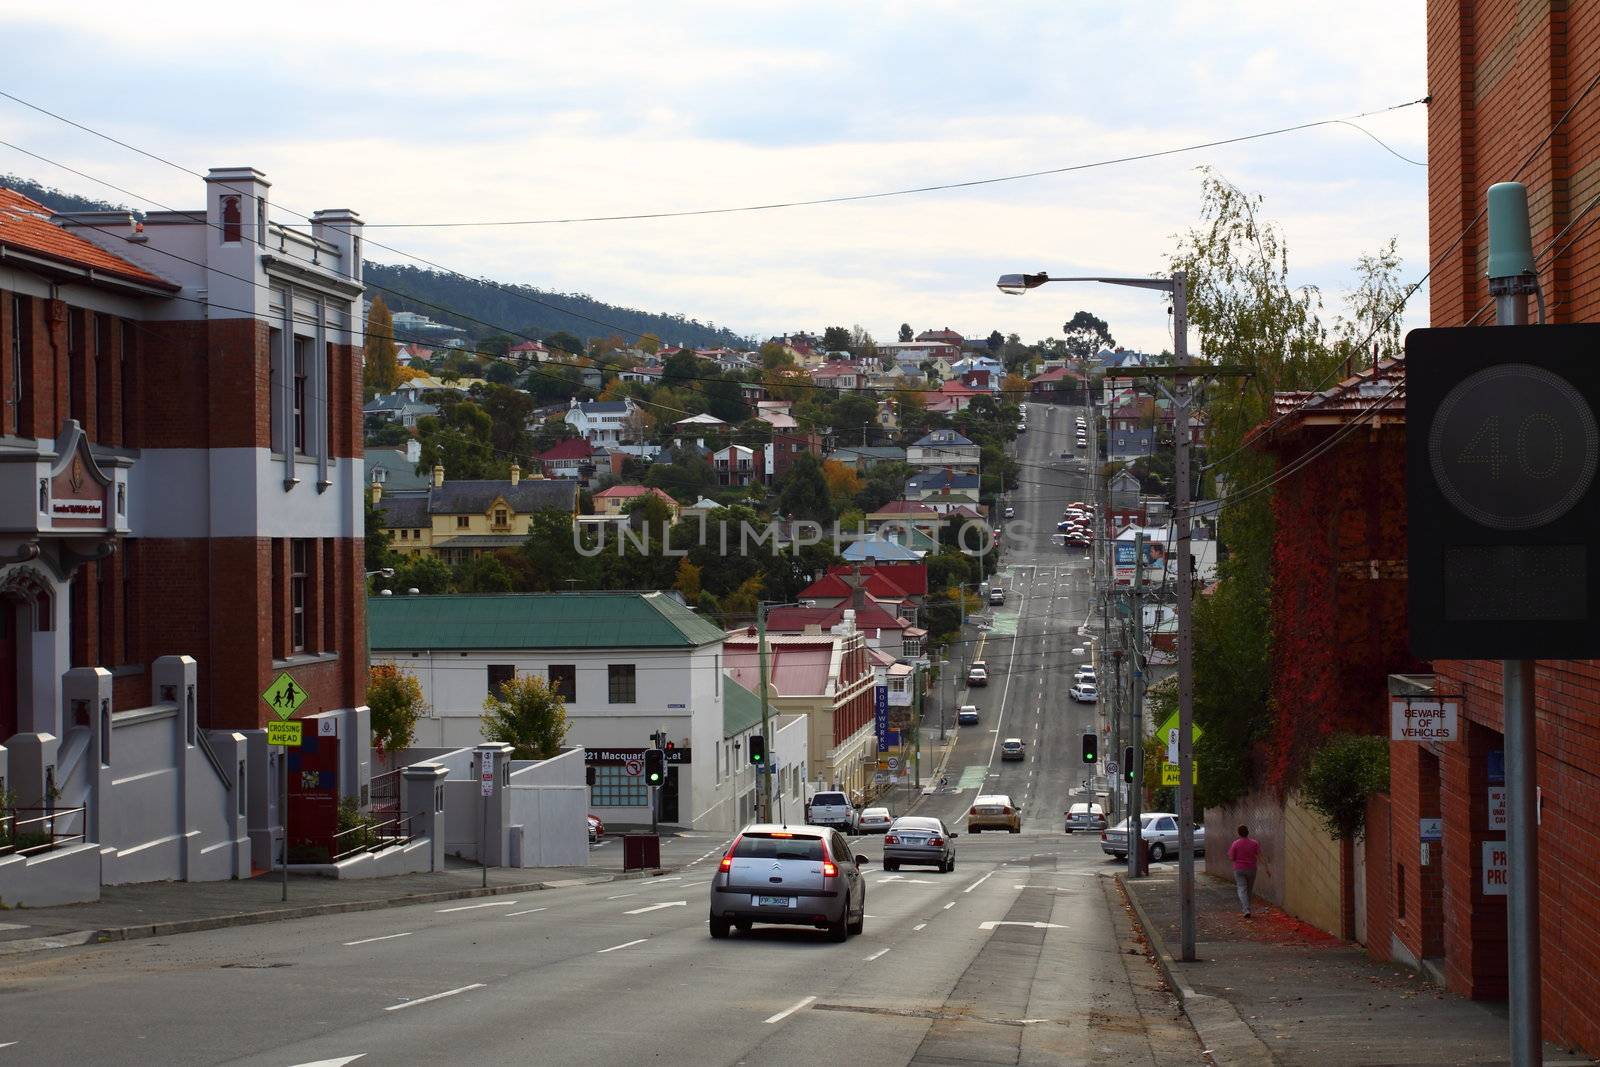 Hobart in Australia by mariusz_prusaczyk